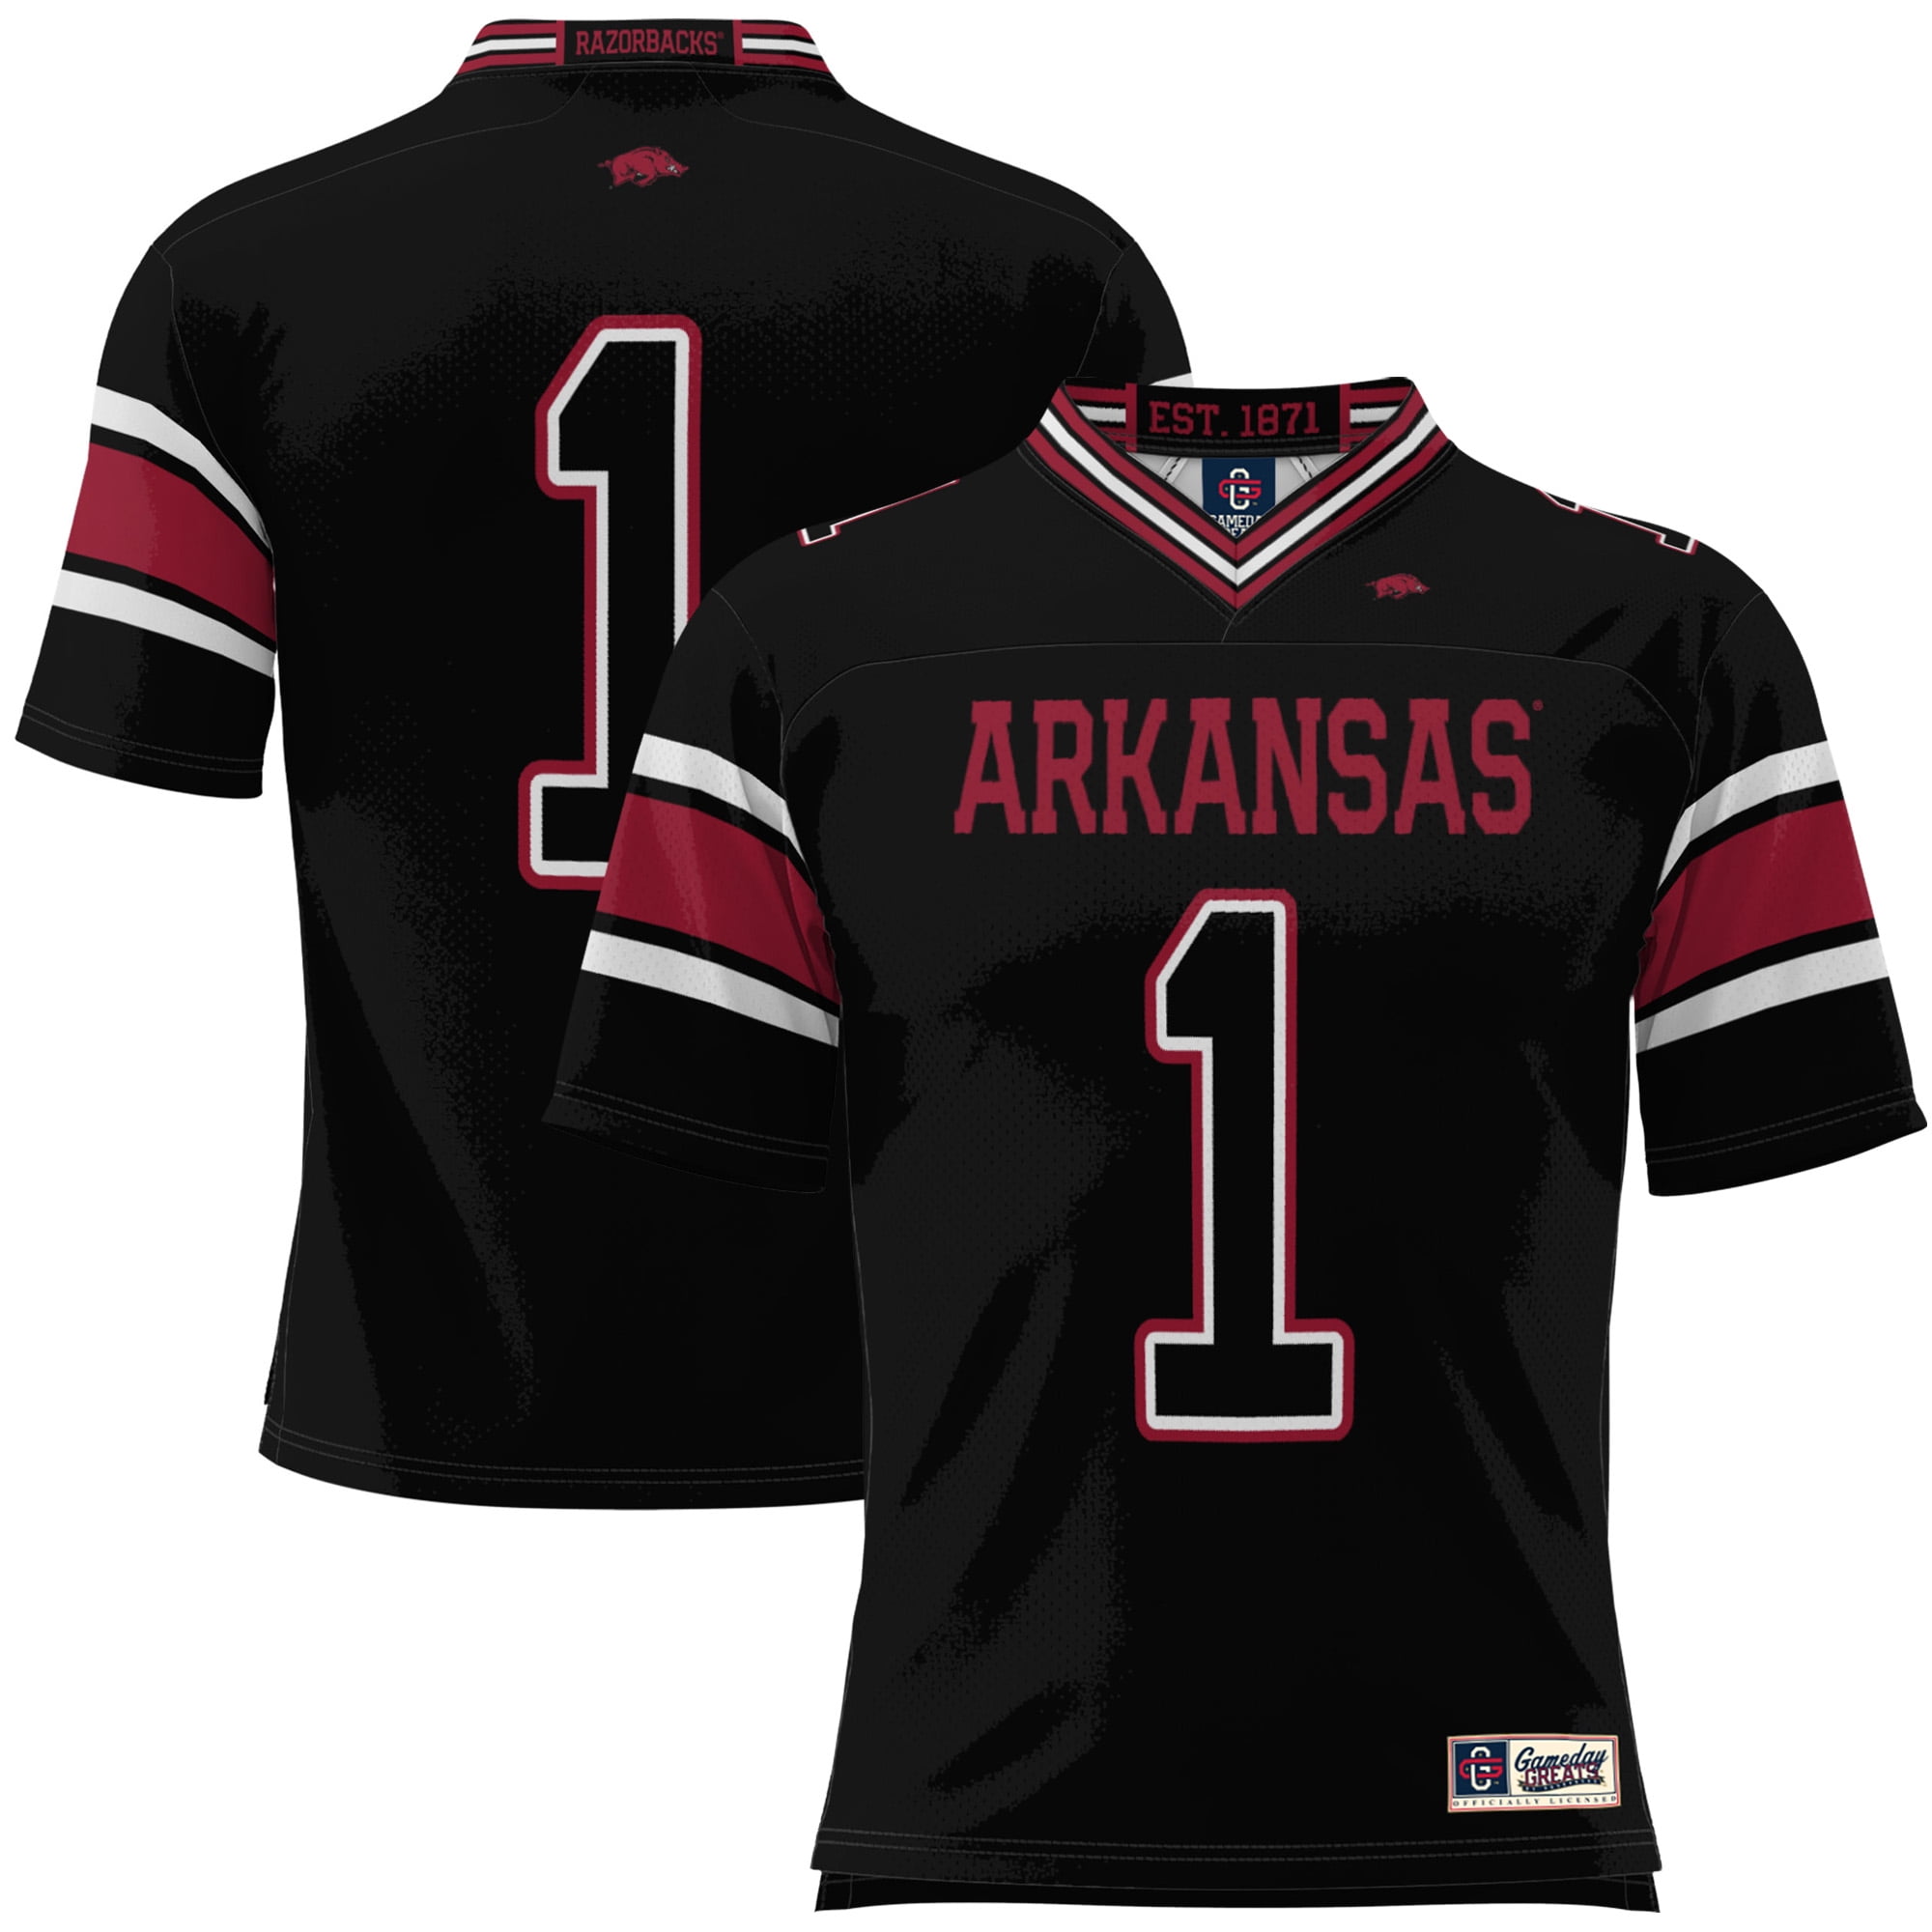 Arkansas Razorbacks men's fan jersey